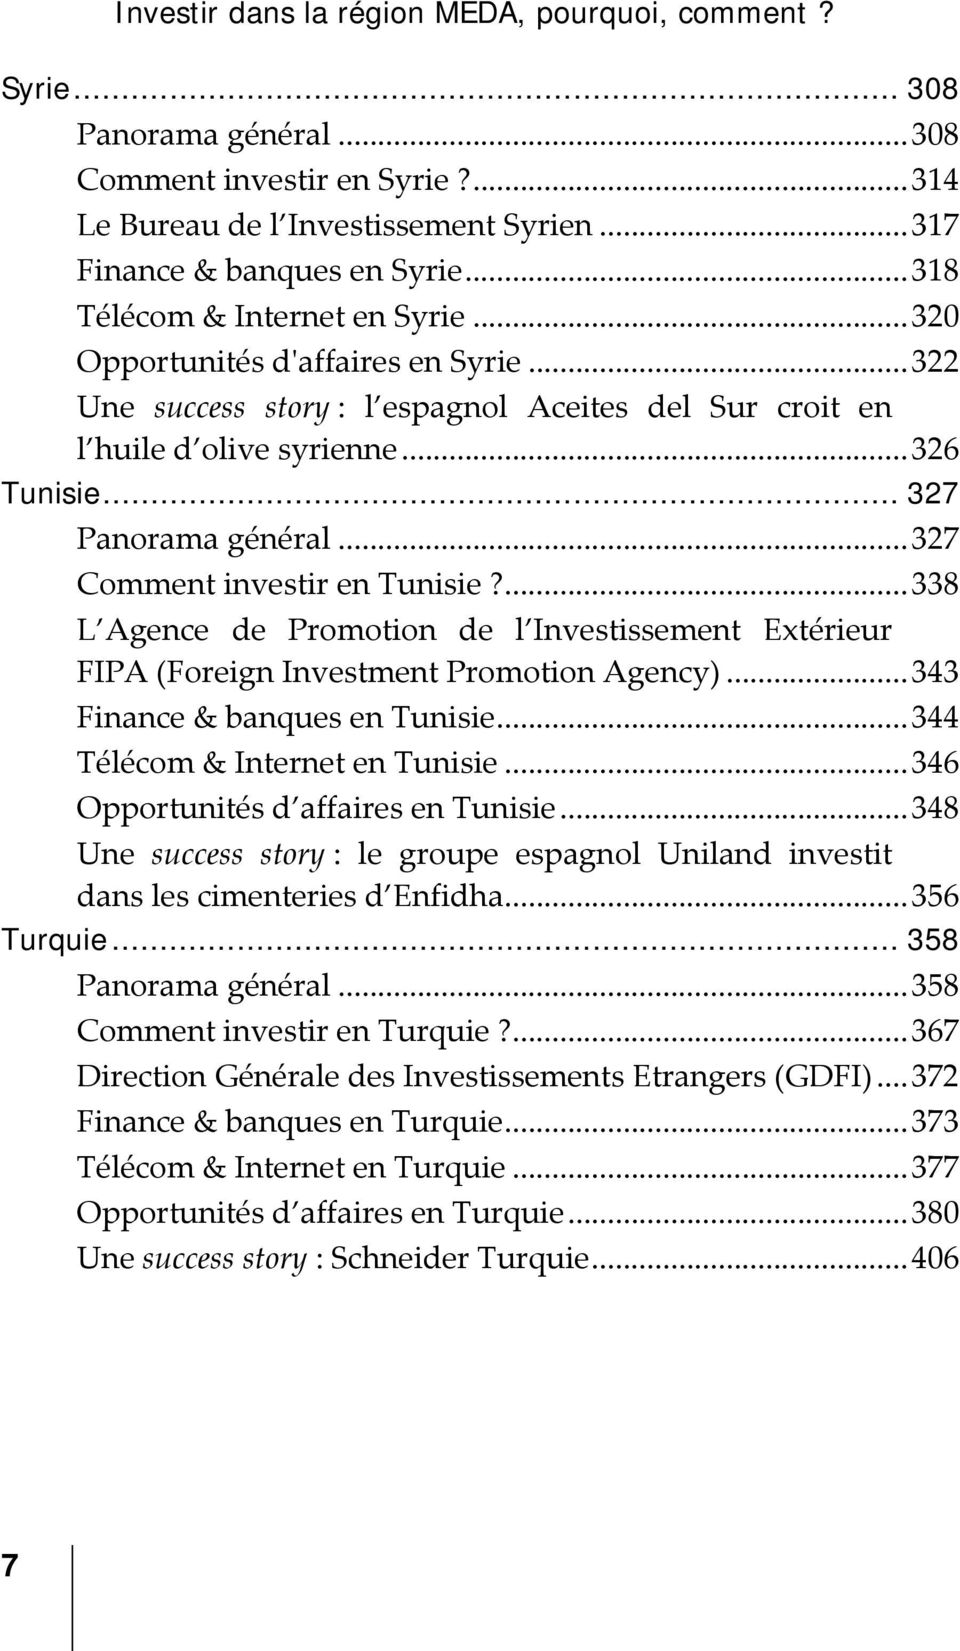 ..327 Comment investir en Tunisie?...338 L Agence de Promotion de l Investissement Extérieur FIPA (Foreign Investment Promotion Agency)...343 Finance & banques en Tunisie.